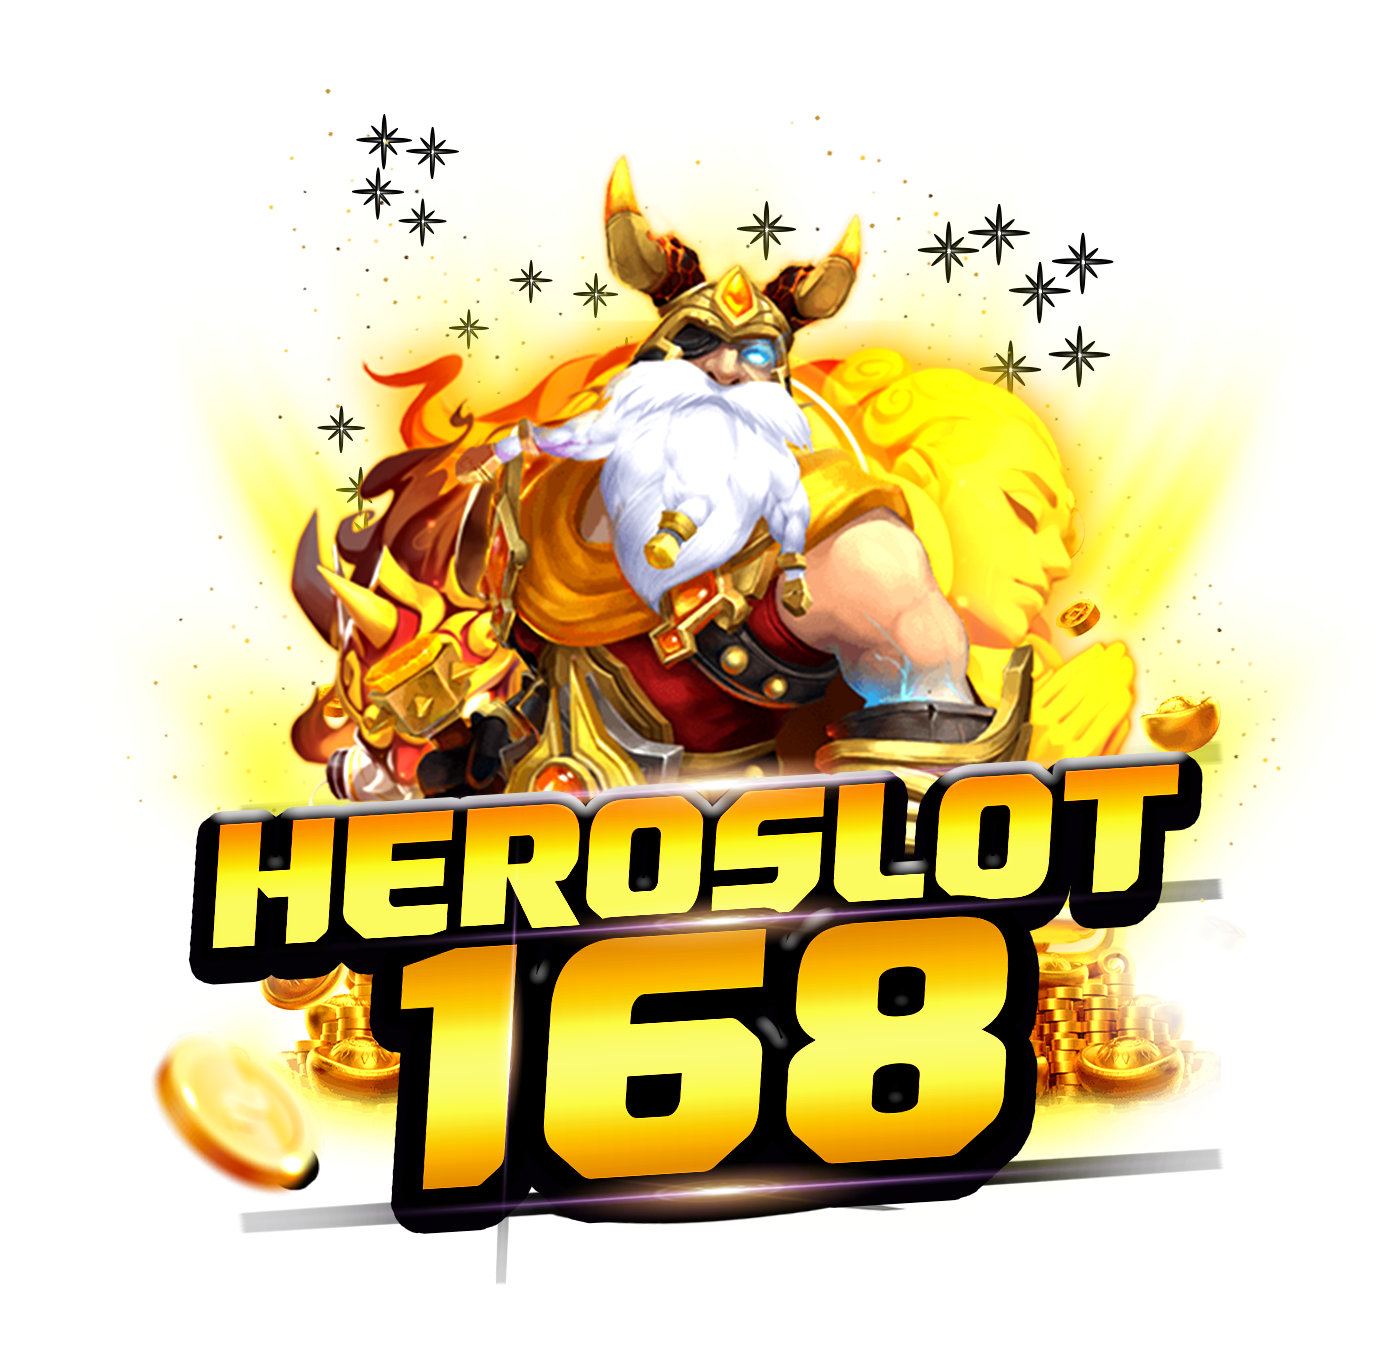 Heroslot168 | Heroslot168 เว็บไซต์กี่ฬาครบวงจรที่ดีที่สุด : Heroslot168 